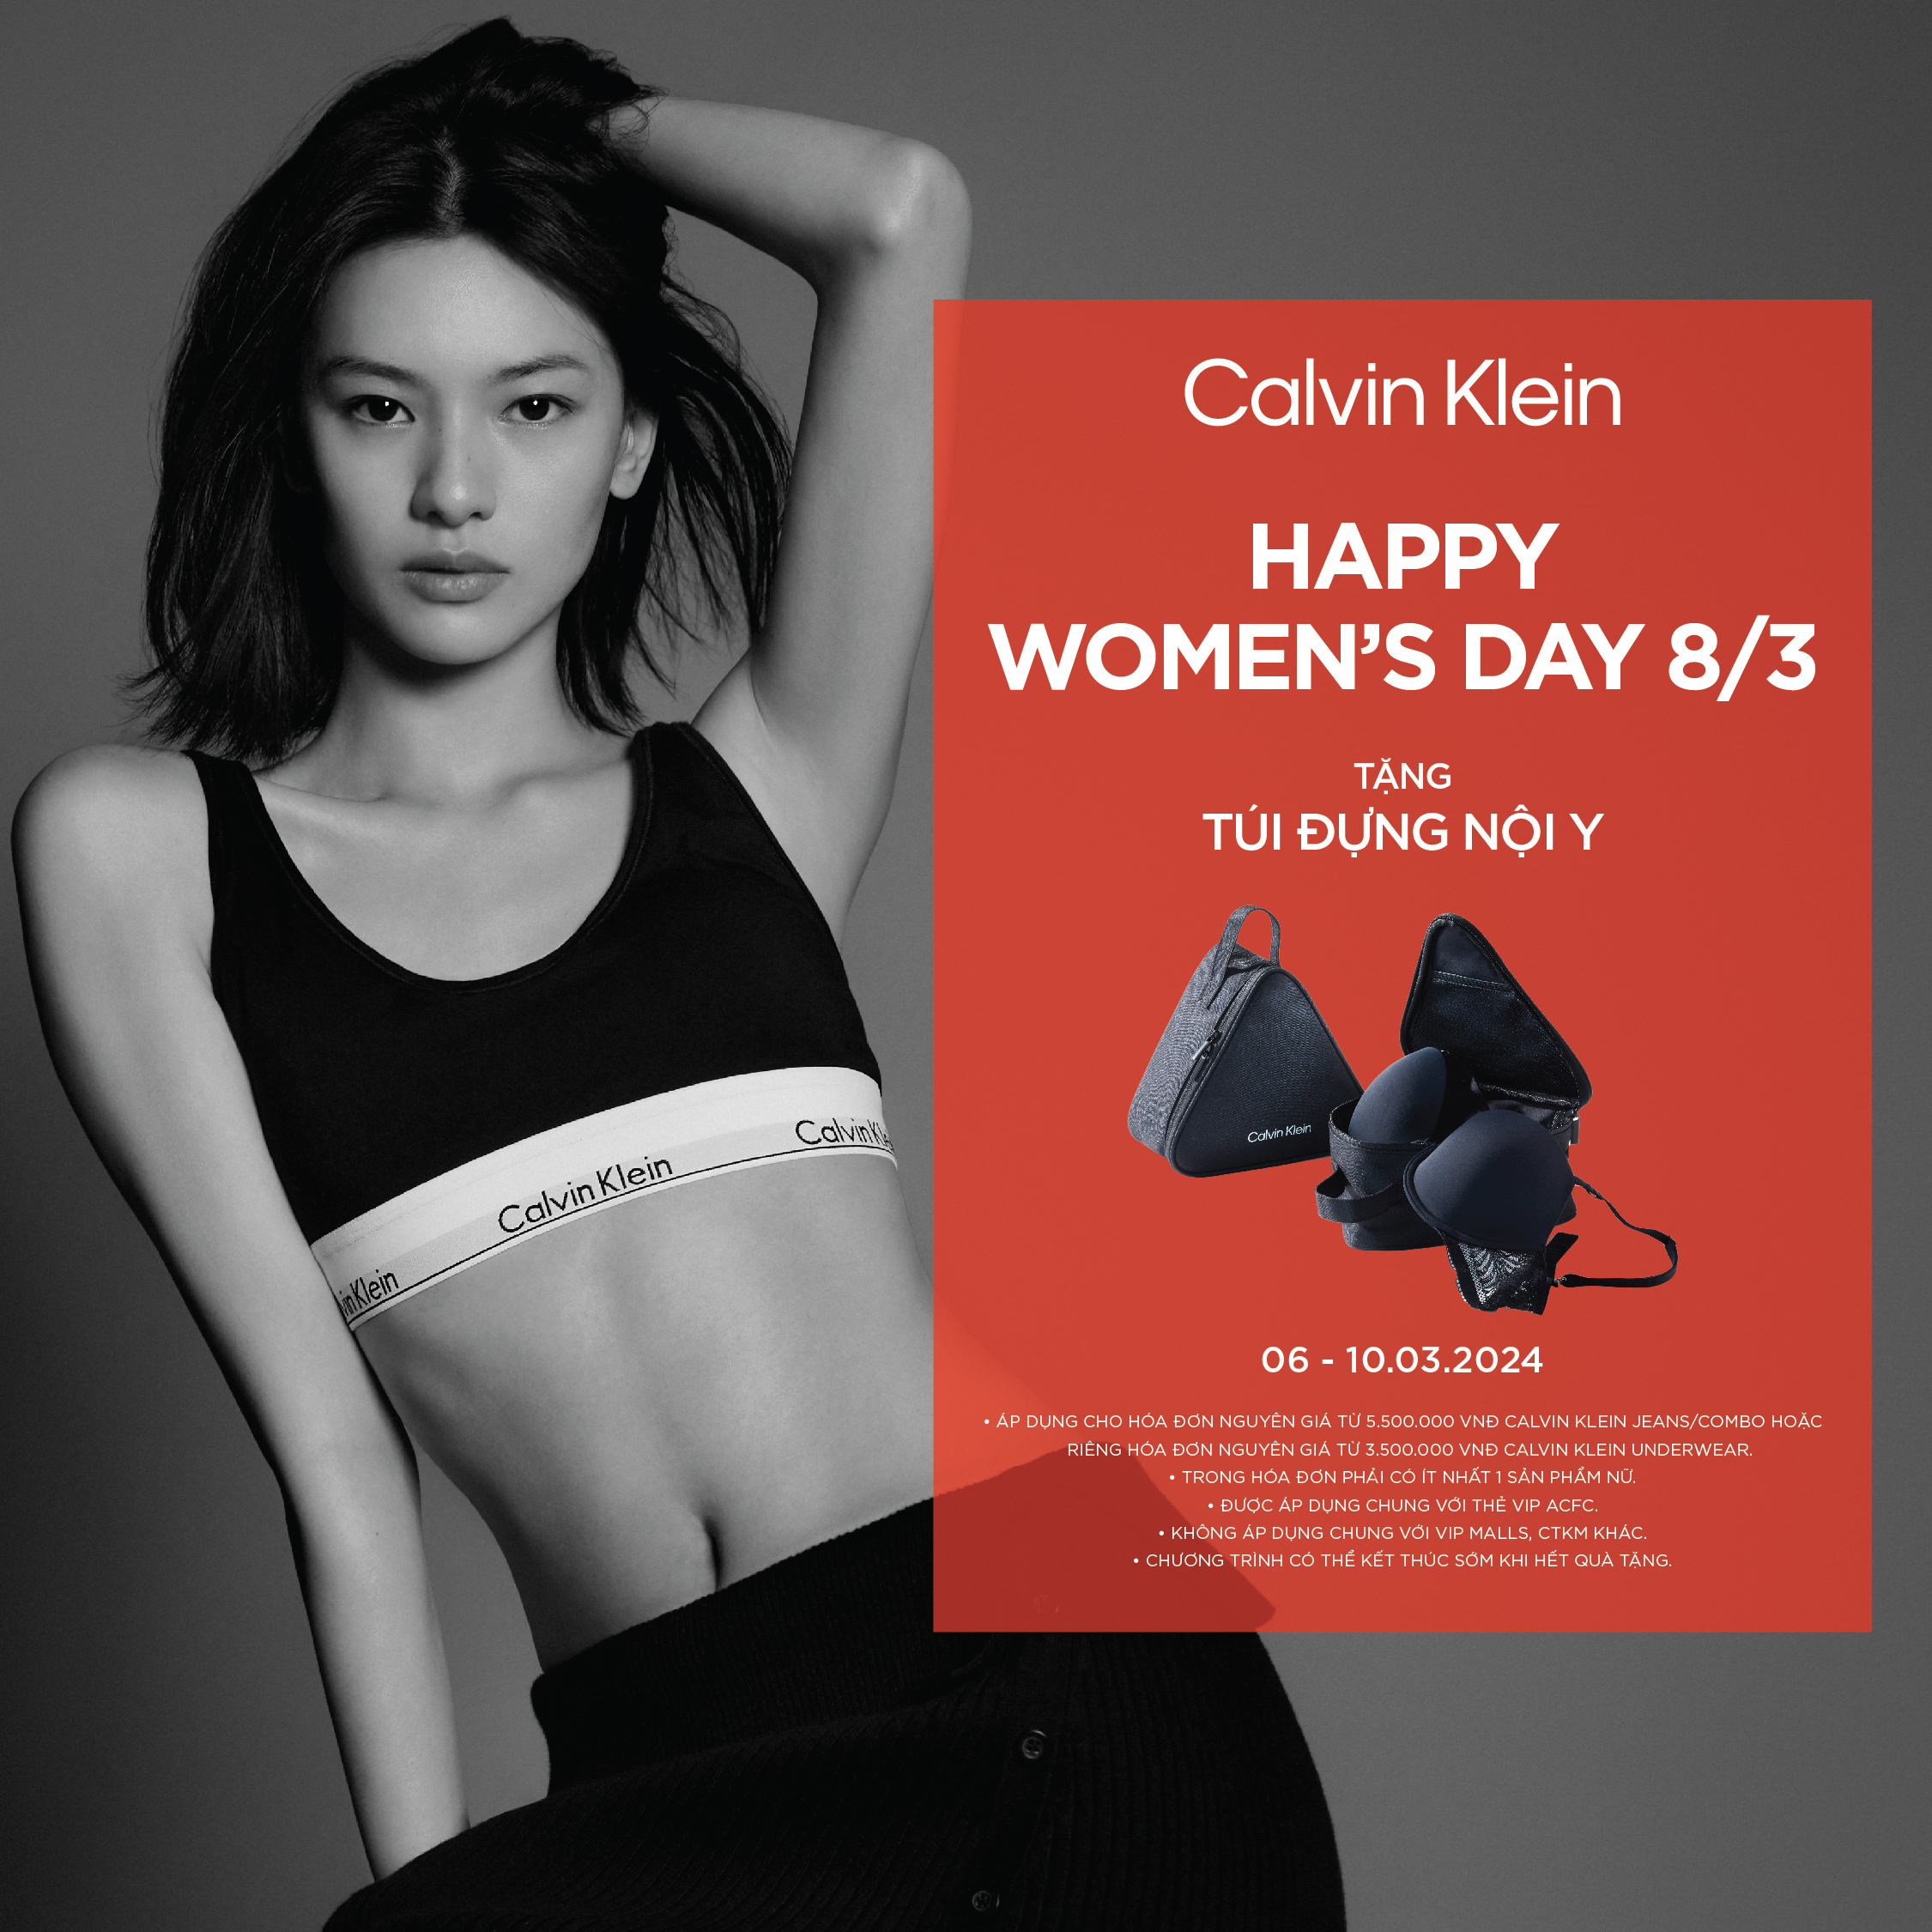 CALVIN KLEIN HAPPY WOMEN'S DAY 8/3 - GIVE AN UNDERWEAR BAG